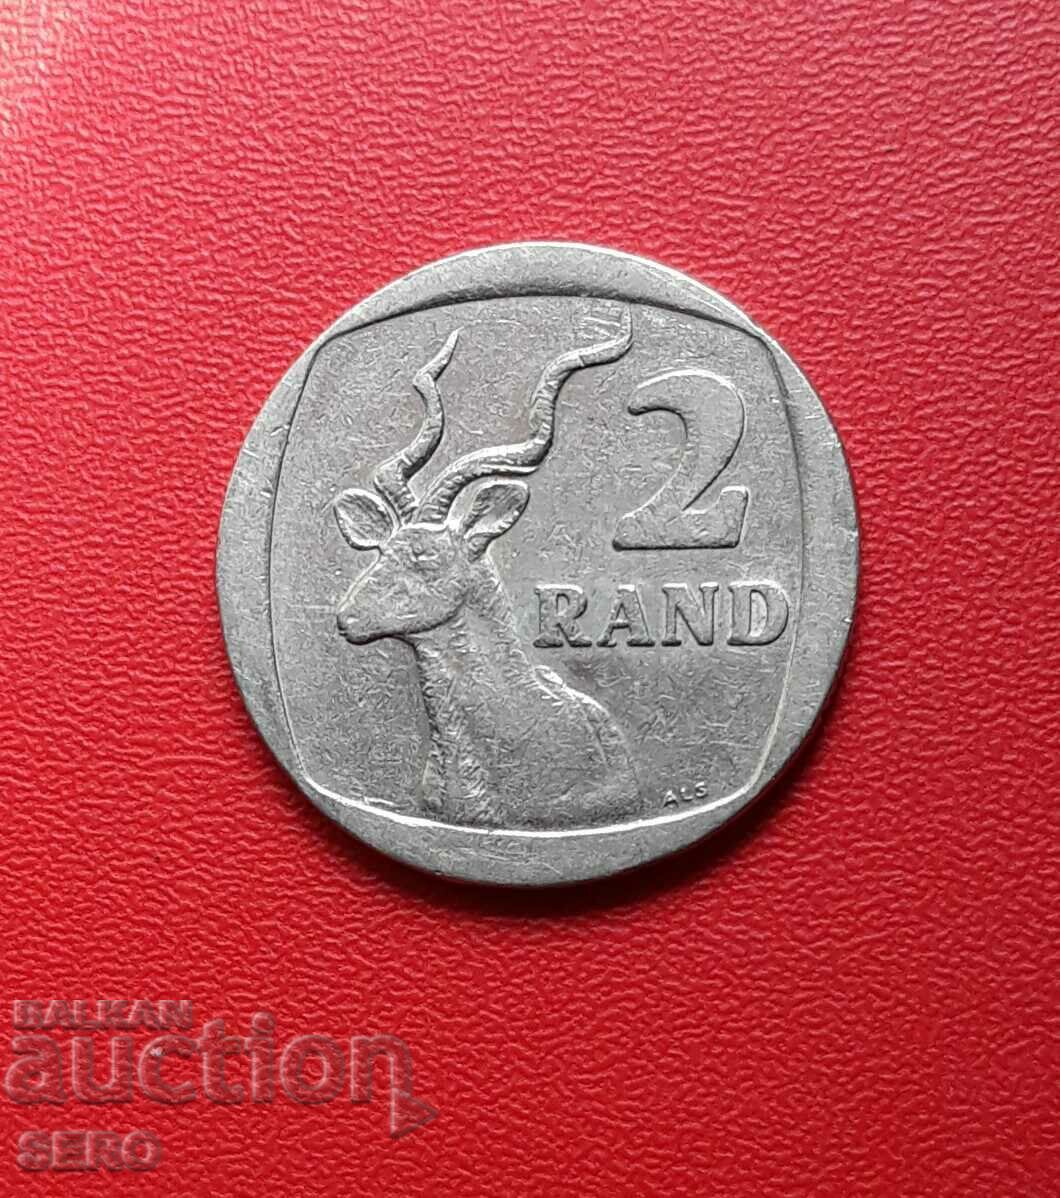 Africa de Sud-2 Rand 2000